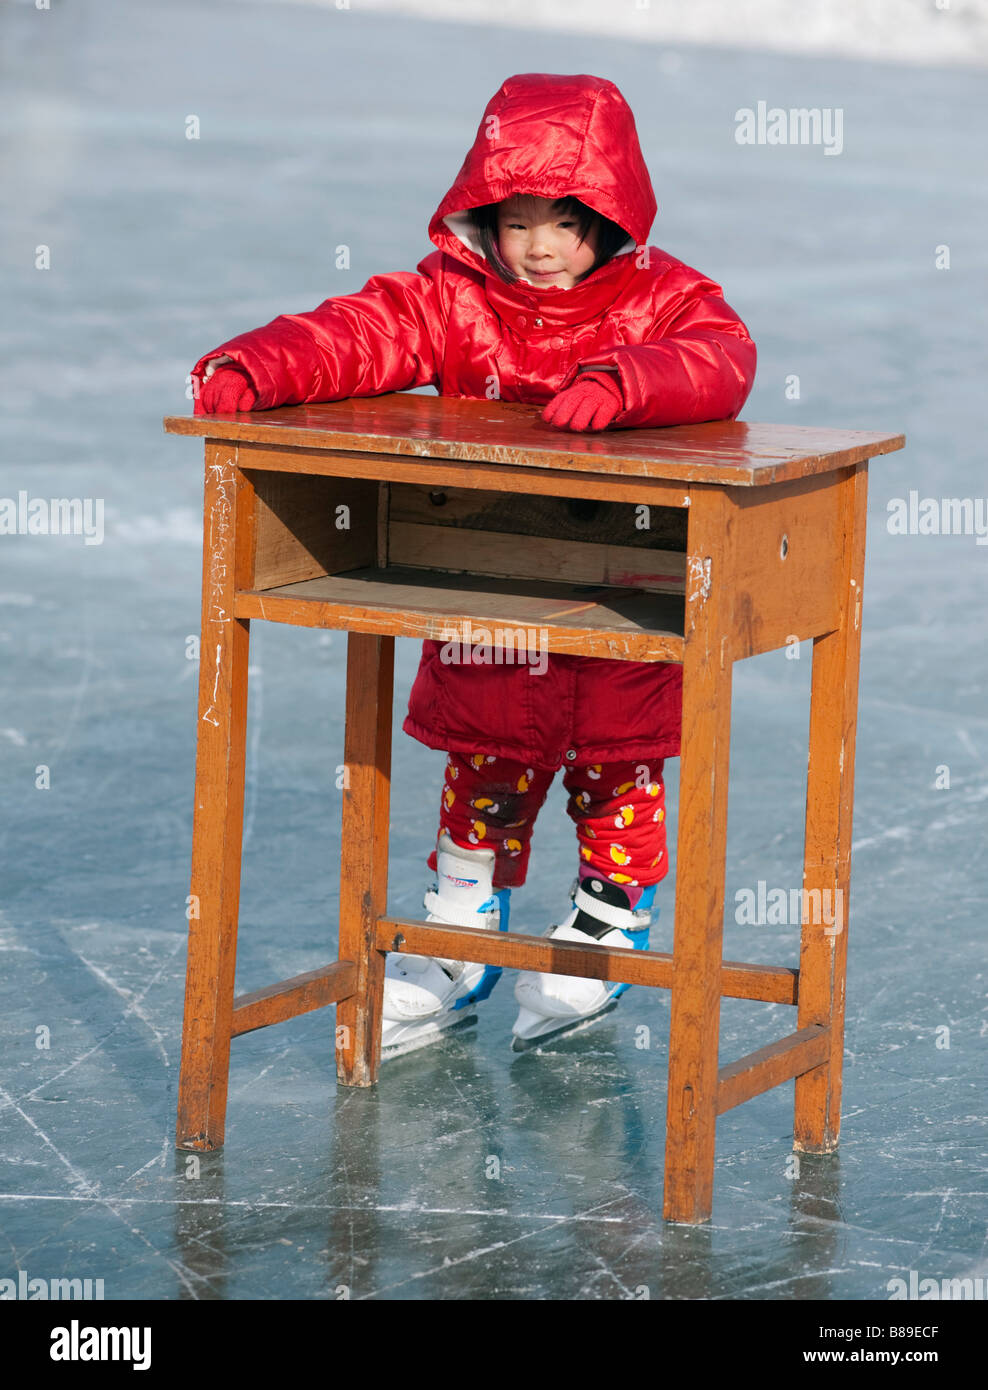 Junge Chinesin mit hölzernen Schreibtisch Skaten lernen zu helfen, Balance auf gefrorenen Fluss Songhua River Harbin China 2009 Stockfoto